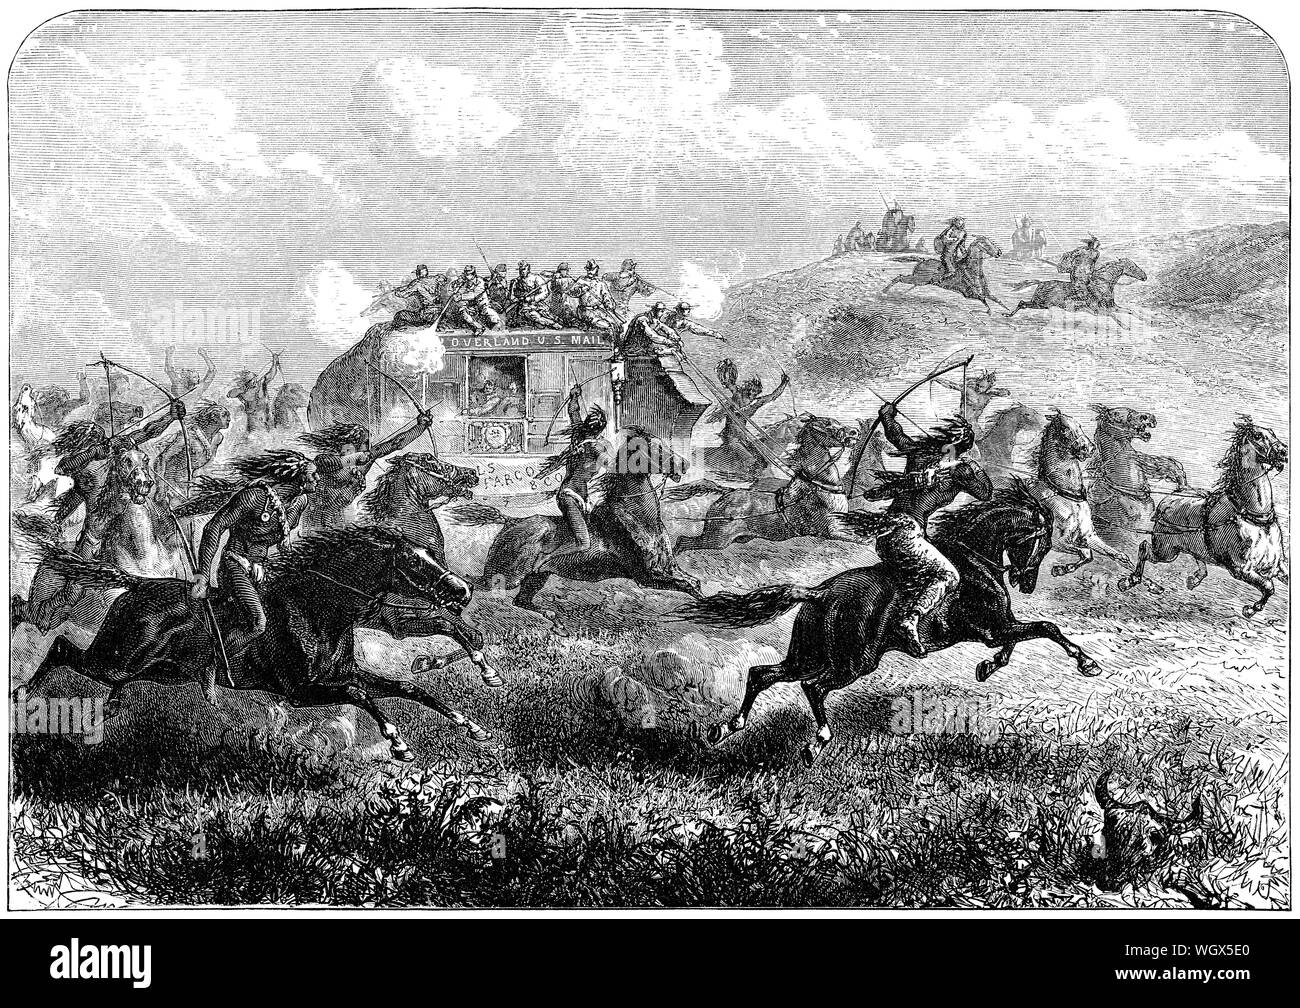 C1876 incisione di un Stati Uniti Mail stagecoach sotto attacco dai nativi americani mentre attraversano la prairie. Foto Stock